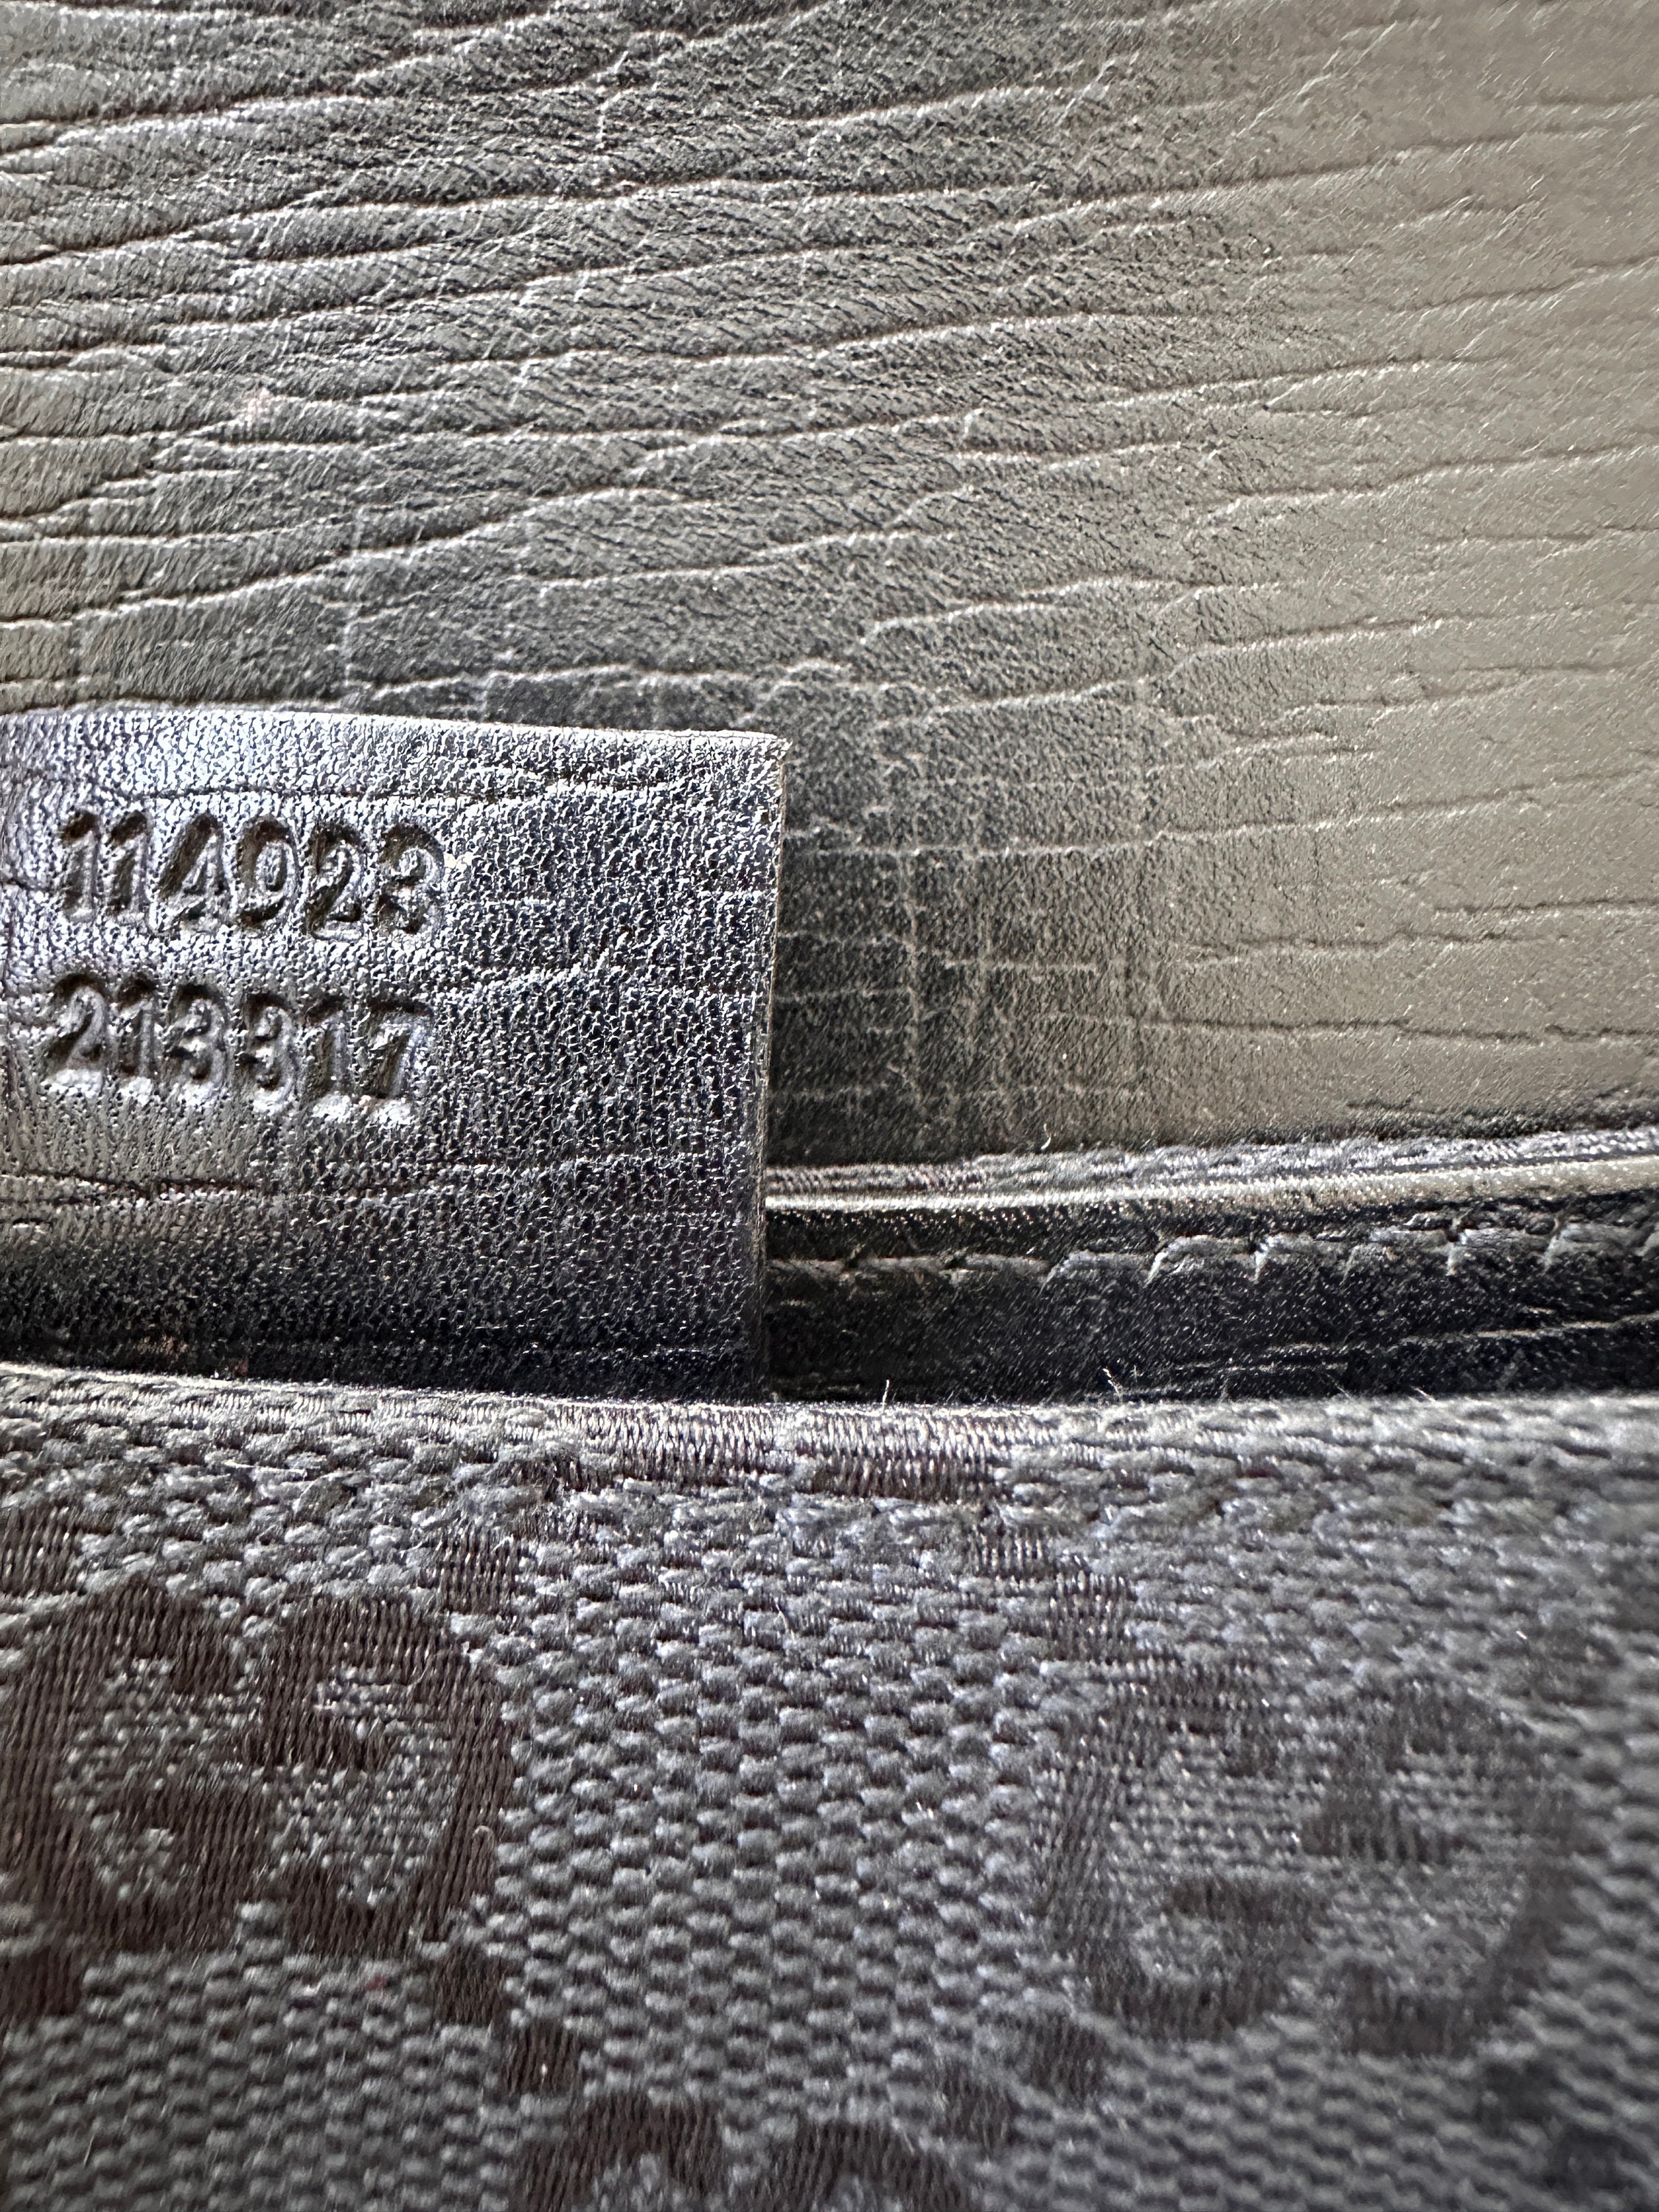 Vintage 90’s Gucci by Tom Ford Horsebit Monogram Shoulder Bag Purse